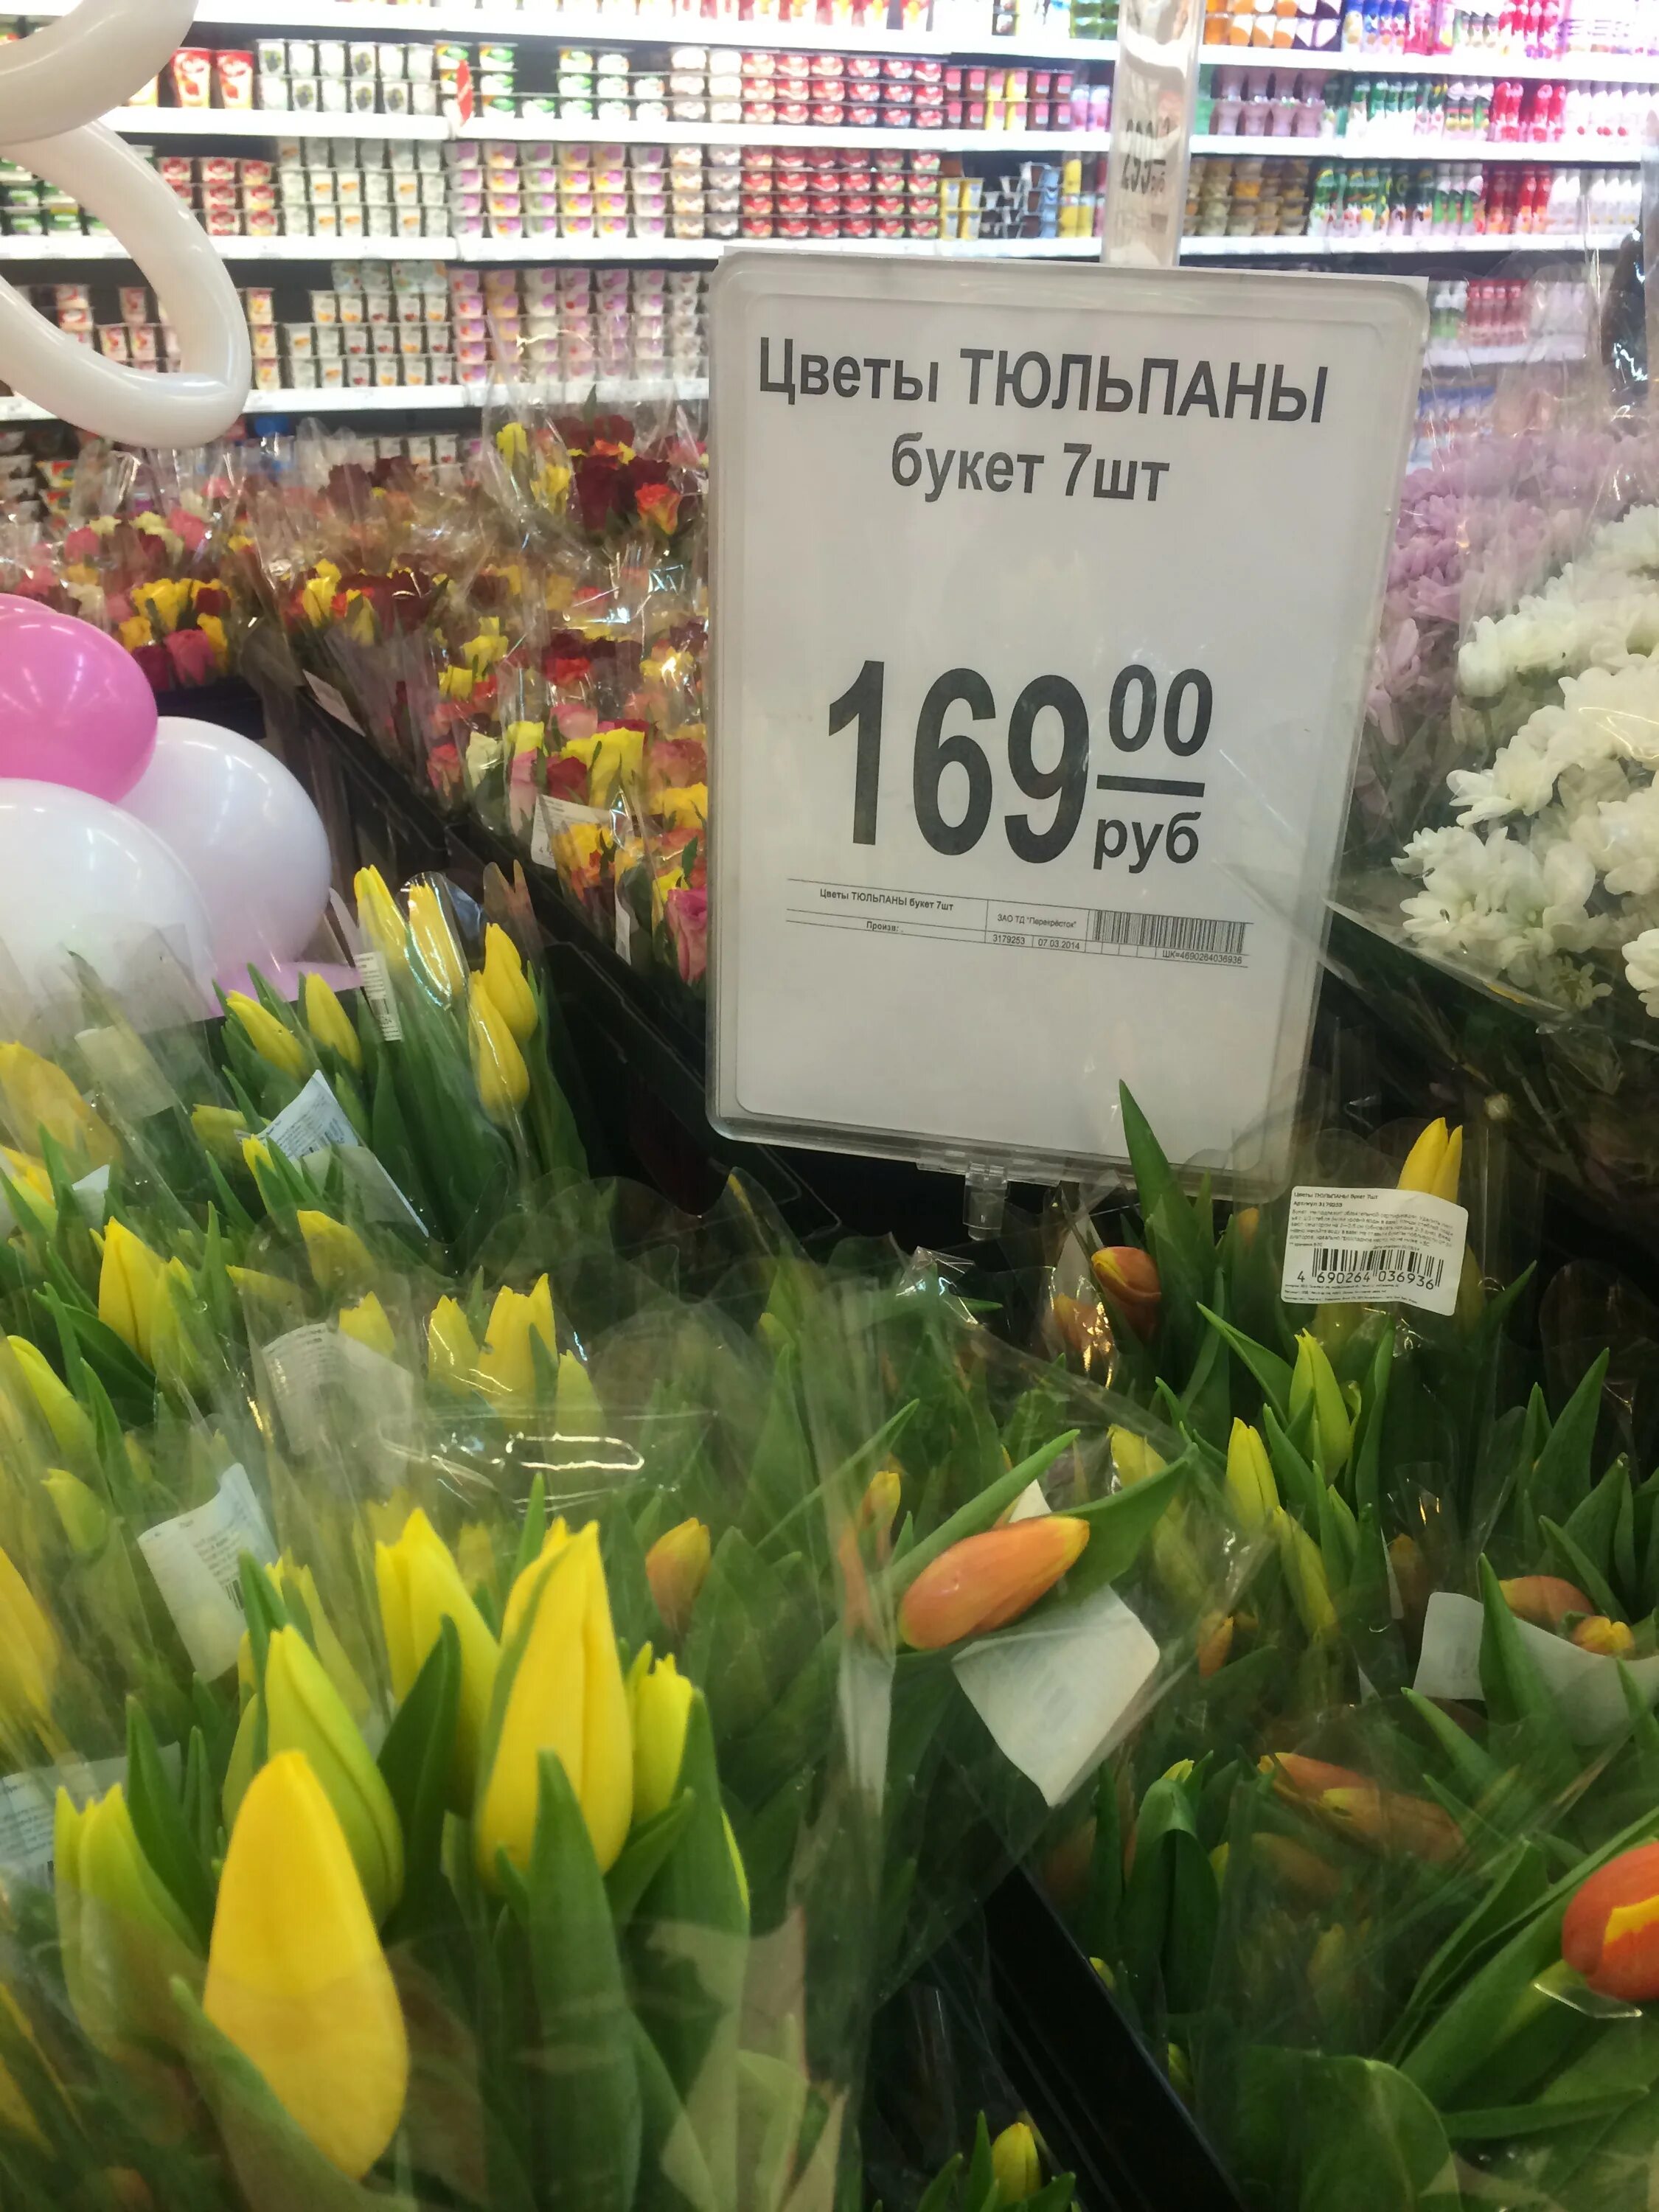 Тюльпаны в цветочном магазине. Ценники для цветочного магазина. Тюльпаны в супермаркетах. Цветы в супермаркете. Цветочный магазин тюльпаны цена